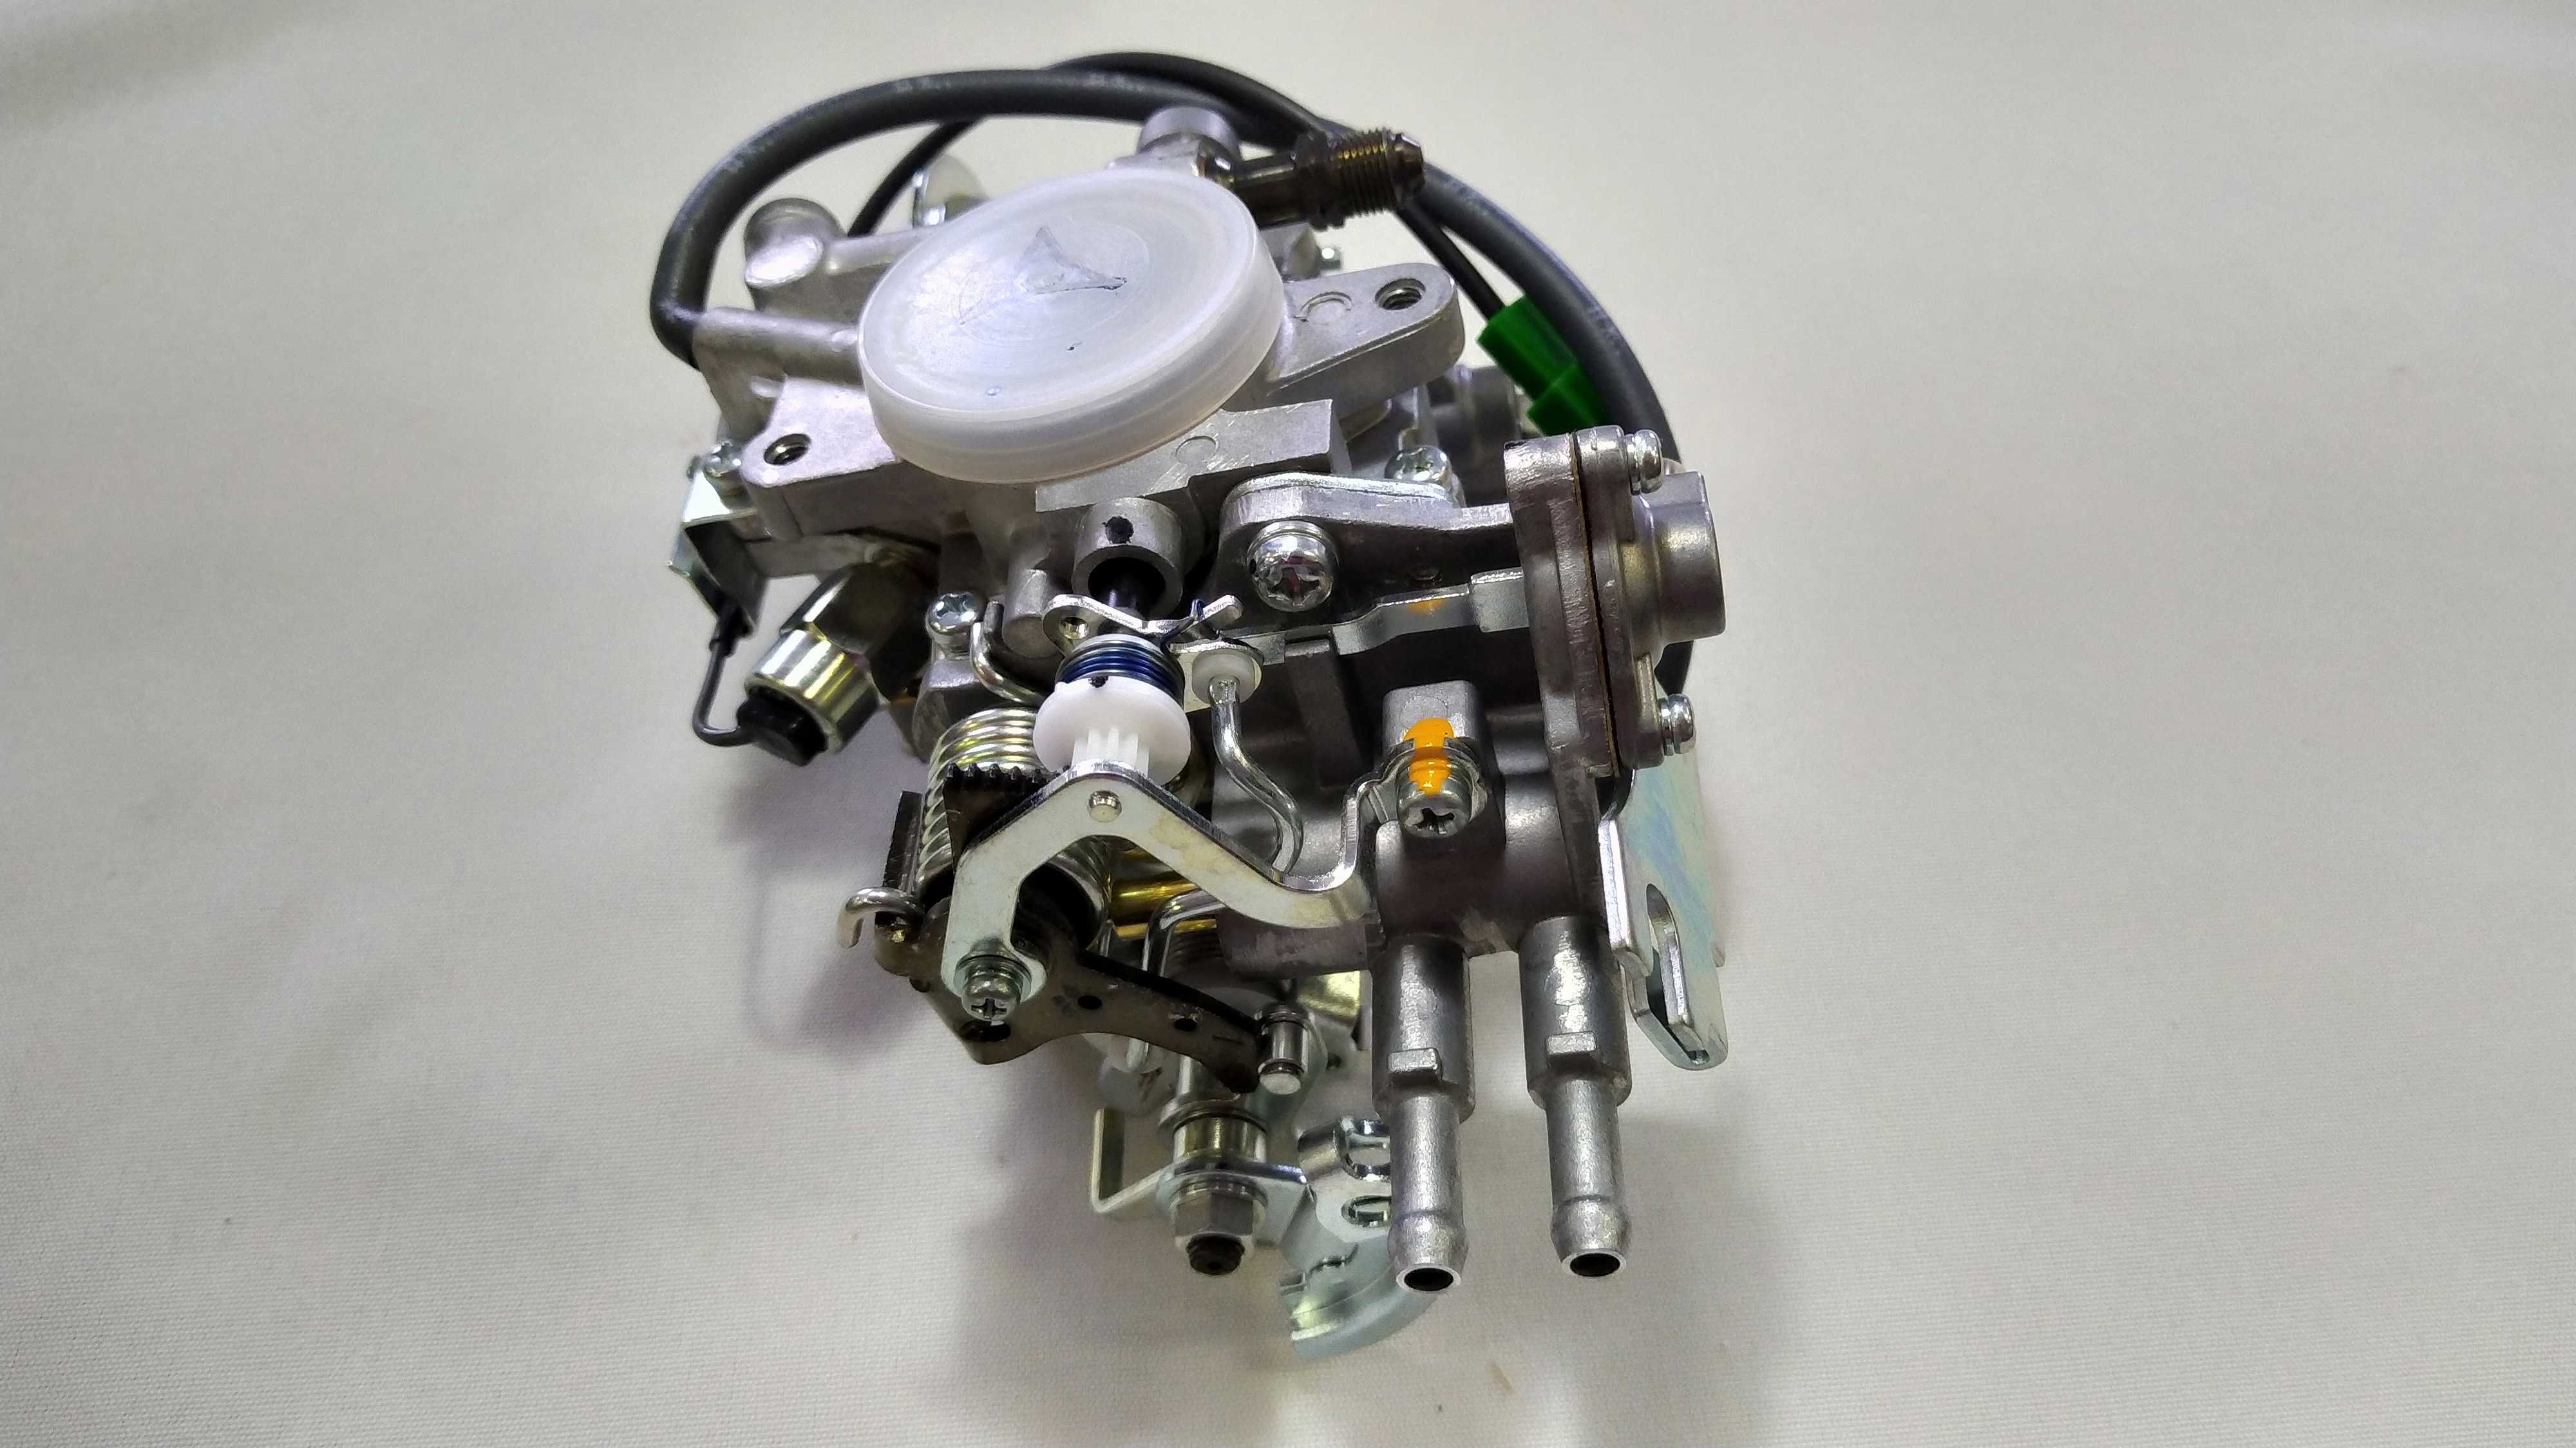 Карбюратор двигателя вилочного погрузчика. Двигатель Toyota 5K, 4Y.